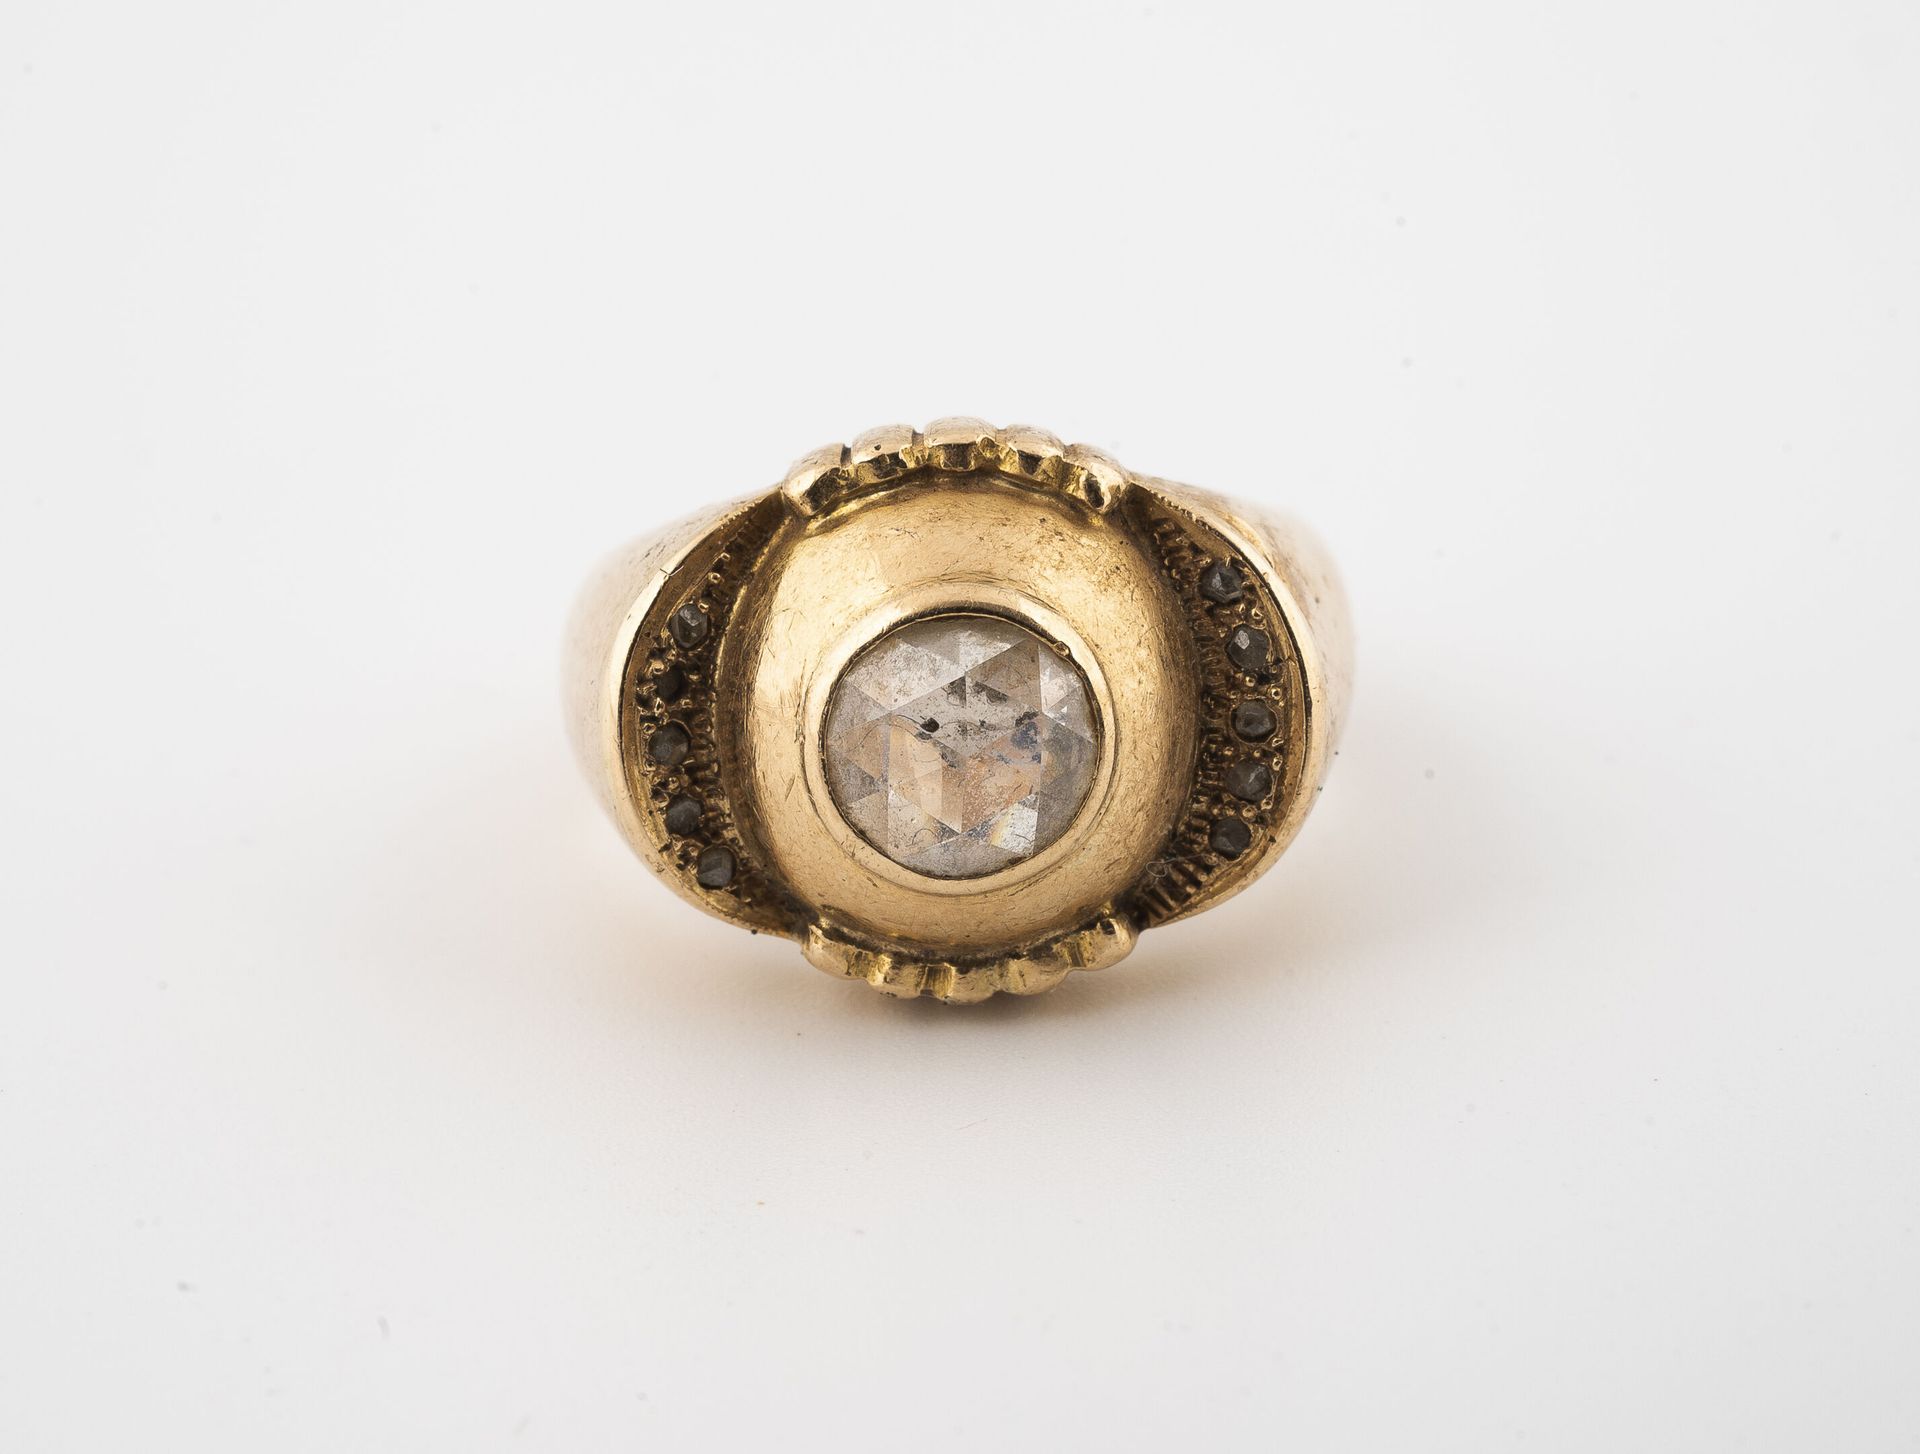 Null 黄金（750）圆顶戒指，以一颗封闭式镶嵌的荷兰玫瑰钻石为中心，周围环绕着石榴花图案，两翼铺设有种子镶嵌的玫瑰切割钻石。

毛重：8.2克 - 手指大小&hellip;